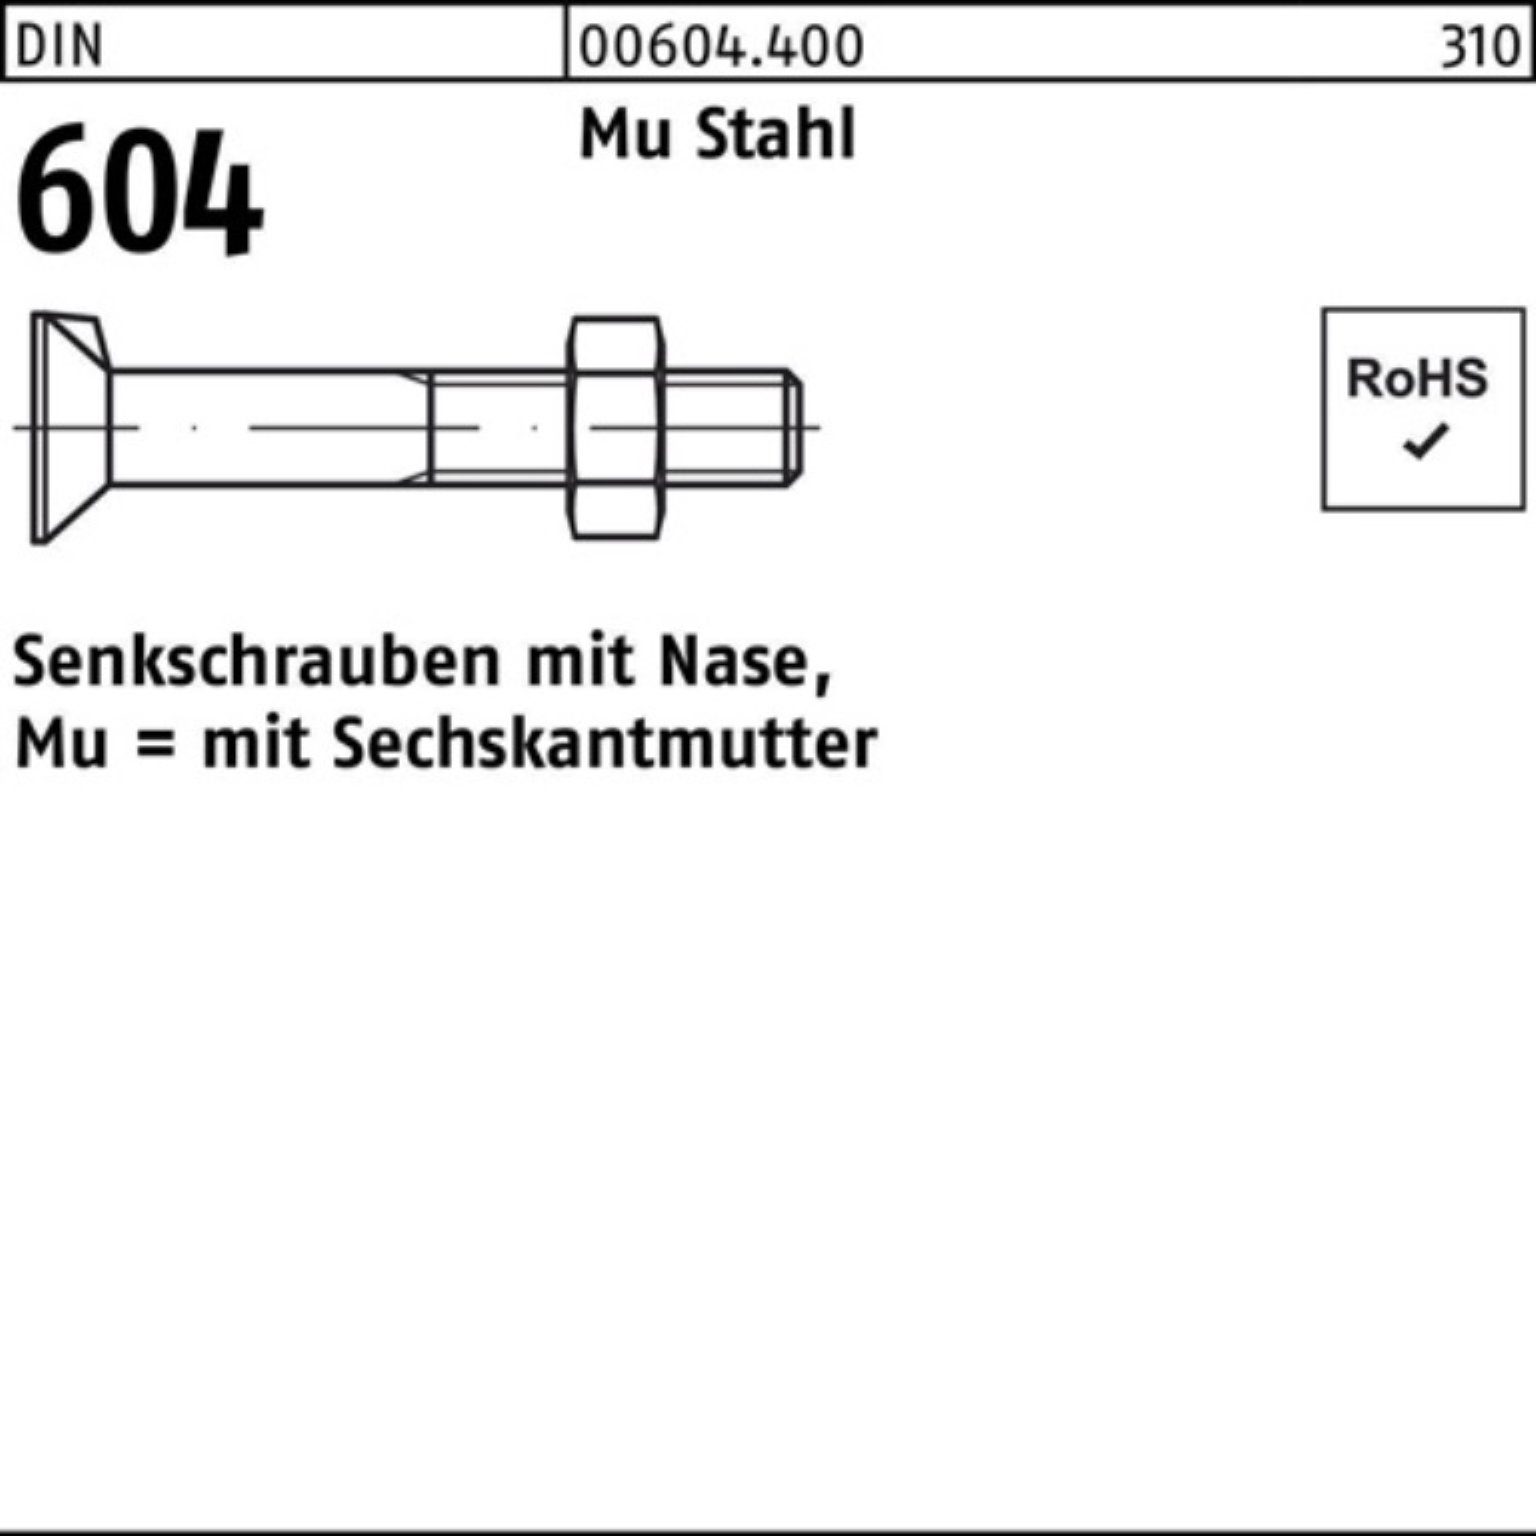 Senkschraube Mu Pack Nase/6-ktmutter M16x Senkschraube Reyher Stahl 60 604 DIN 5 4.6 100er